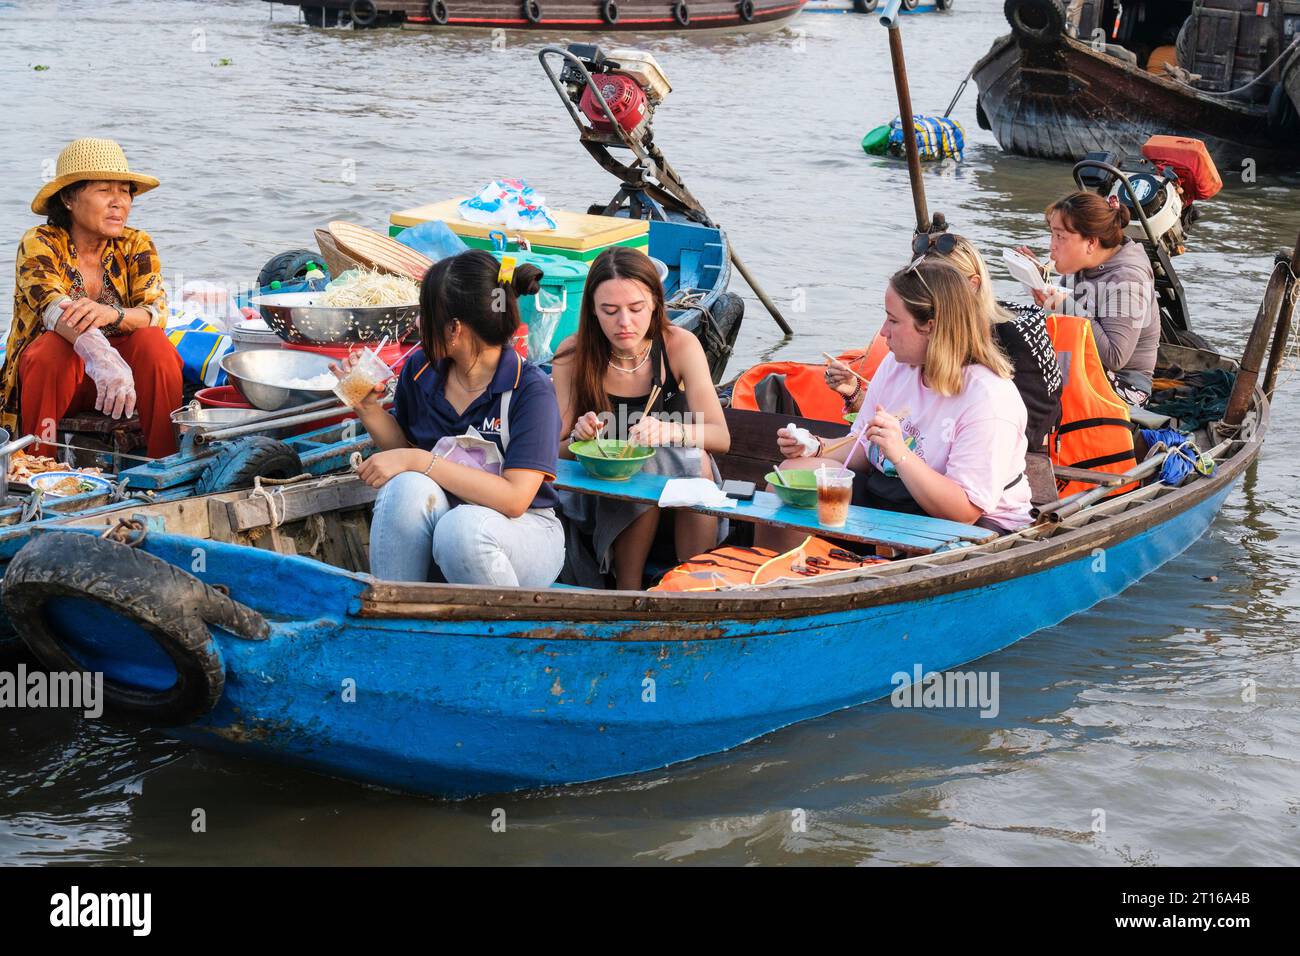 Scène du marché flottant de Phong Dien, près de CAN Tho, Vietnam. Touristes ayant petit déjeuner Banque D'Images